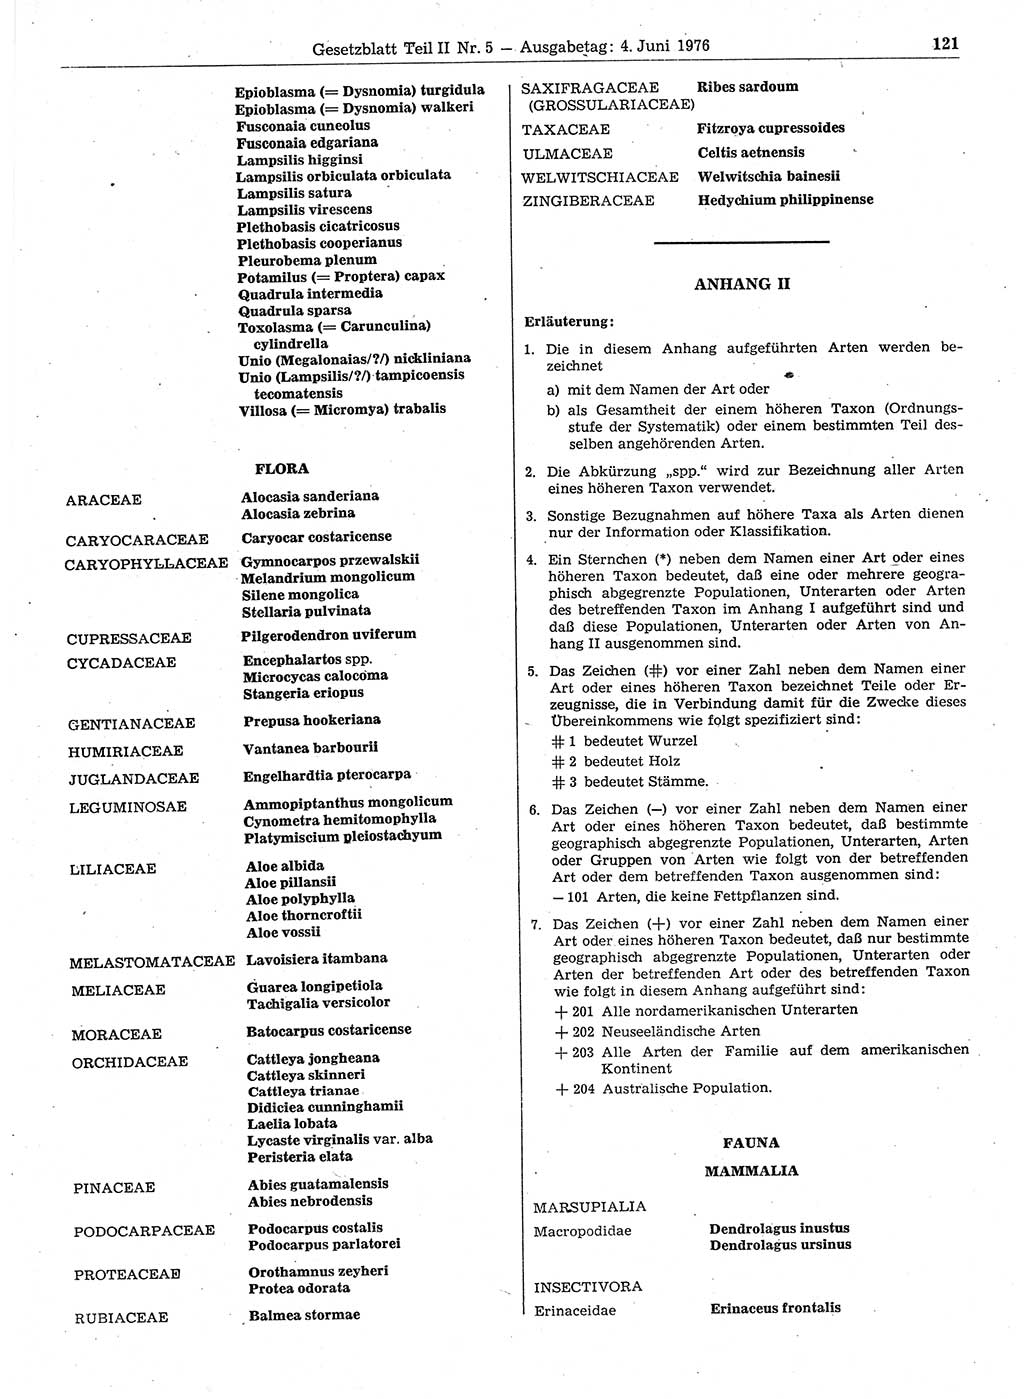 Gesetzblatt (GBl.) der Deutschen Demokratischen Republik (DDR) Teil ⅠⅠ 1976, Seite 121 (GBl. DDR ⅠⅠ 1976, S. 121)